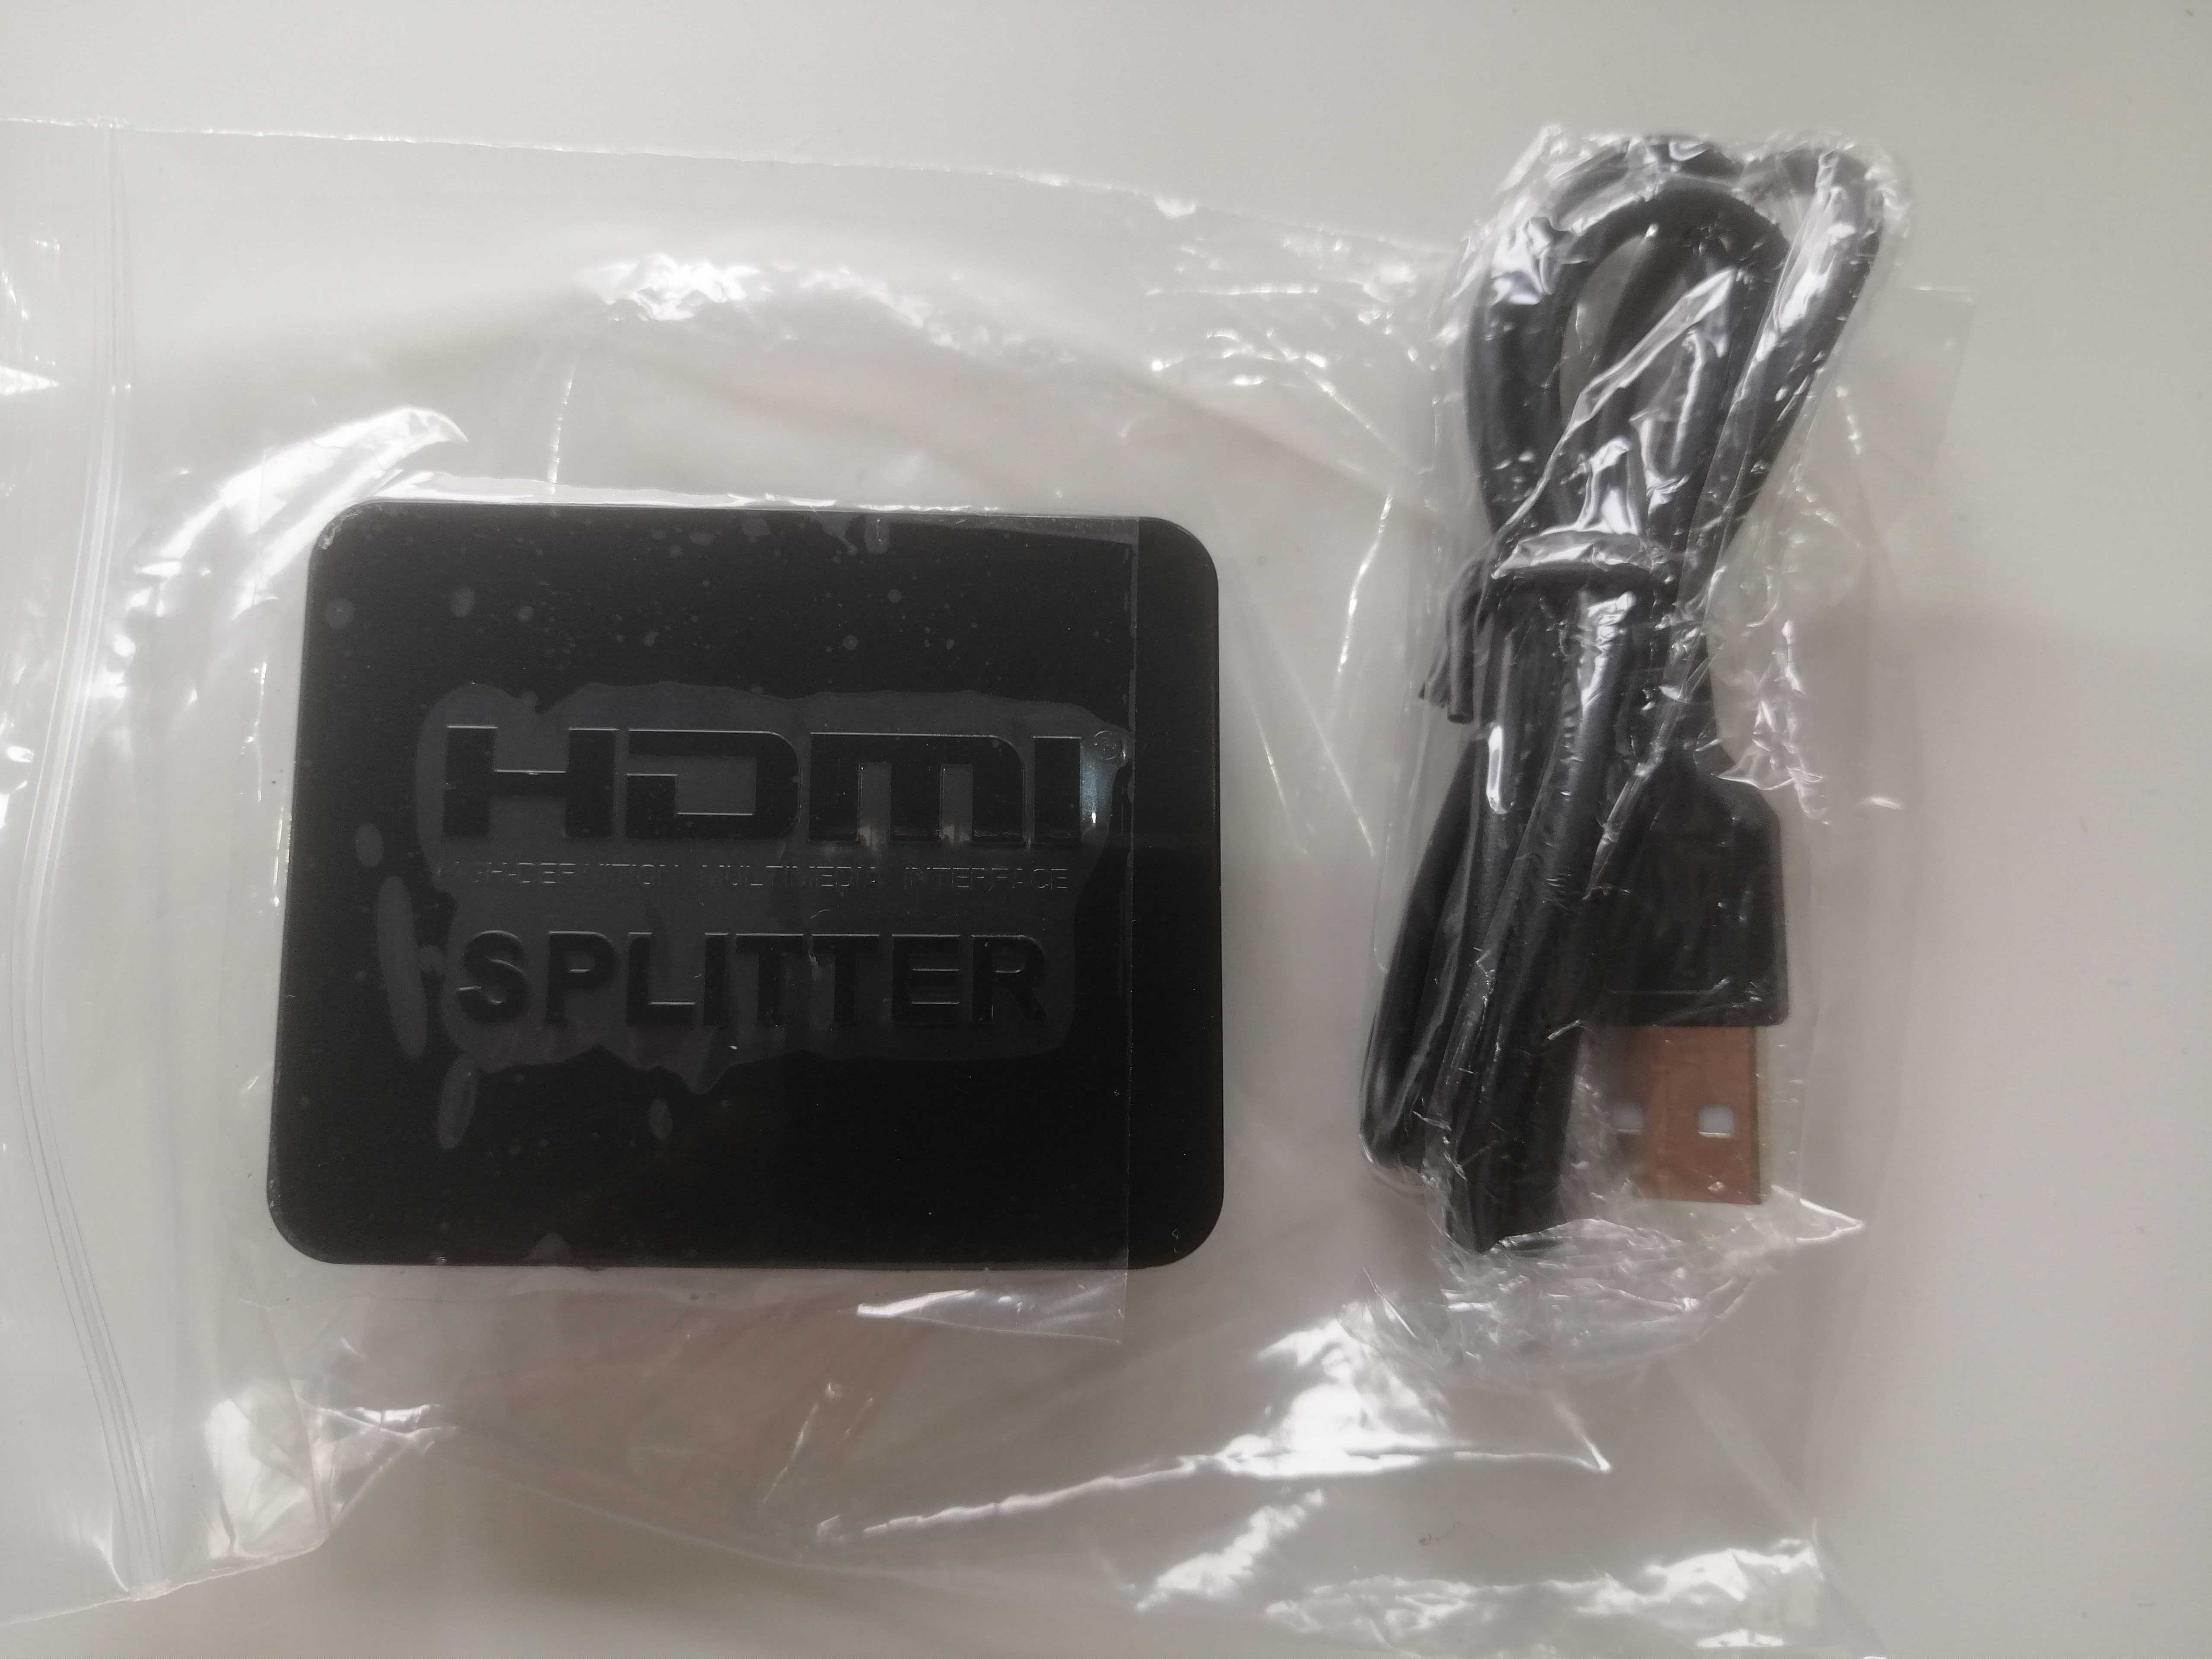 Splitter HDMI - Permite enviar imagem para 2 TV